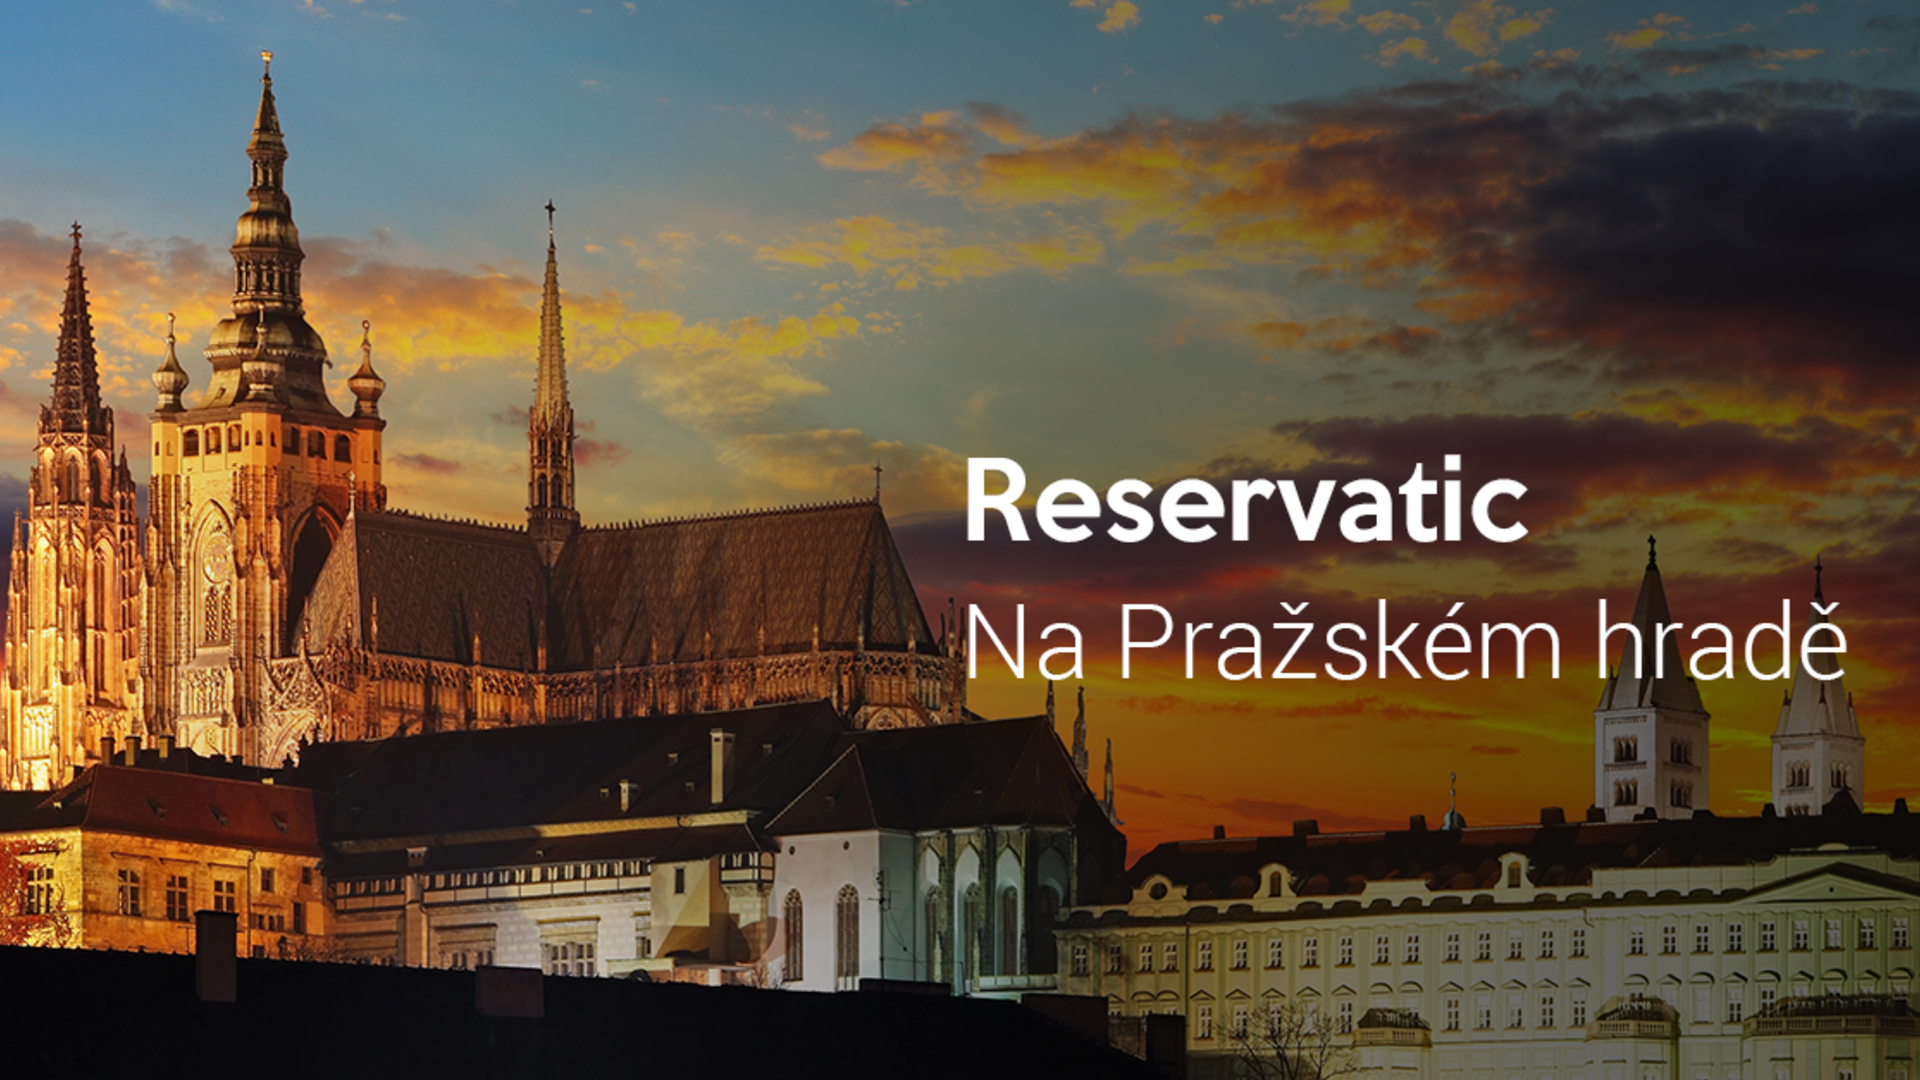 Reservatic na Pražském hradě